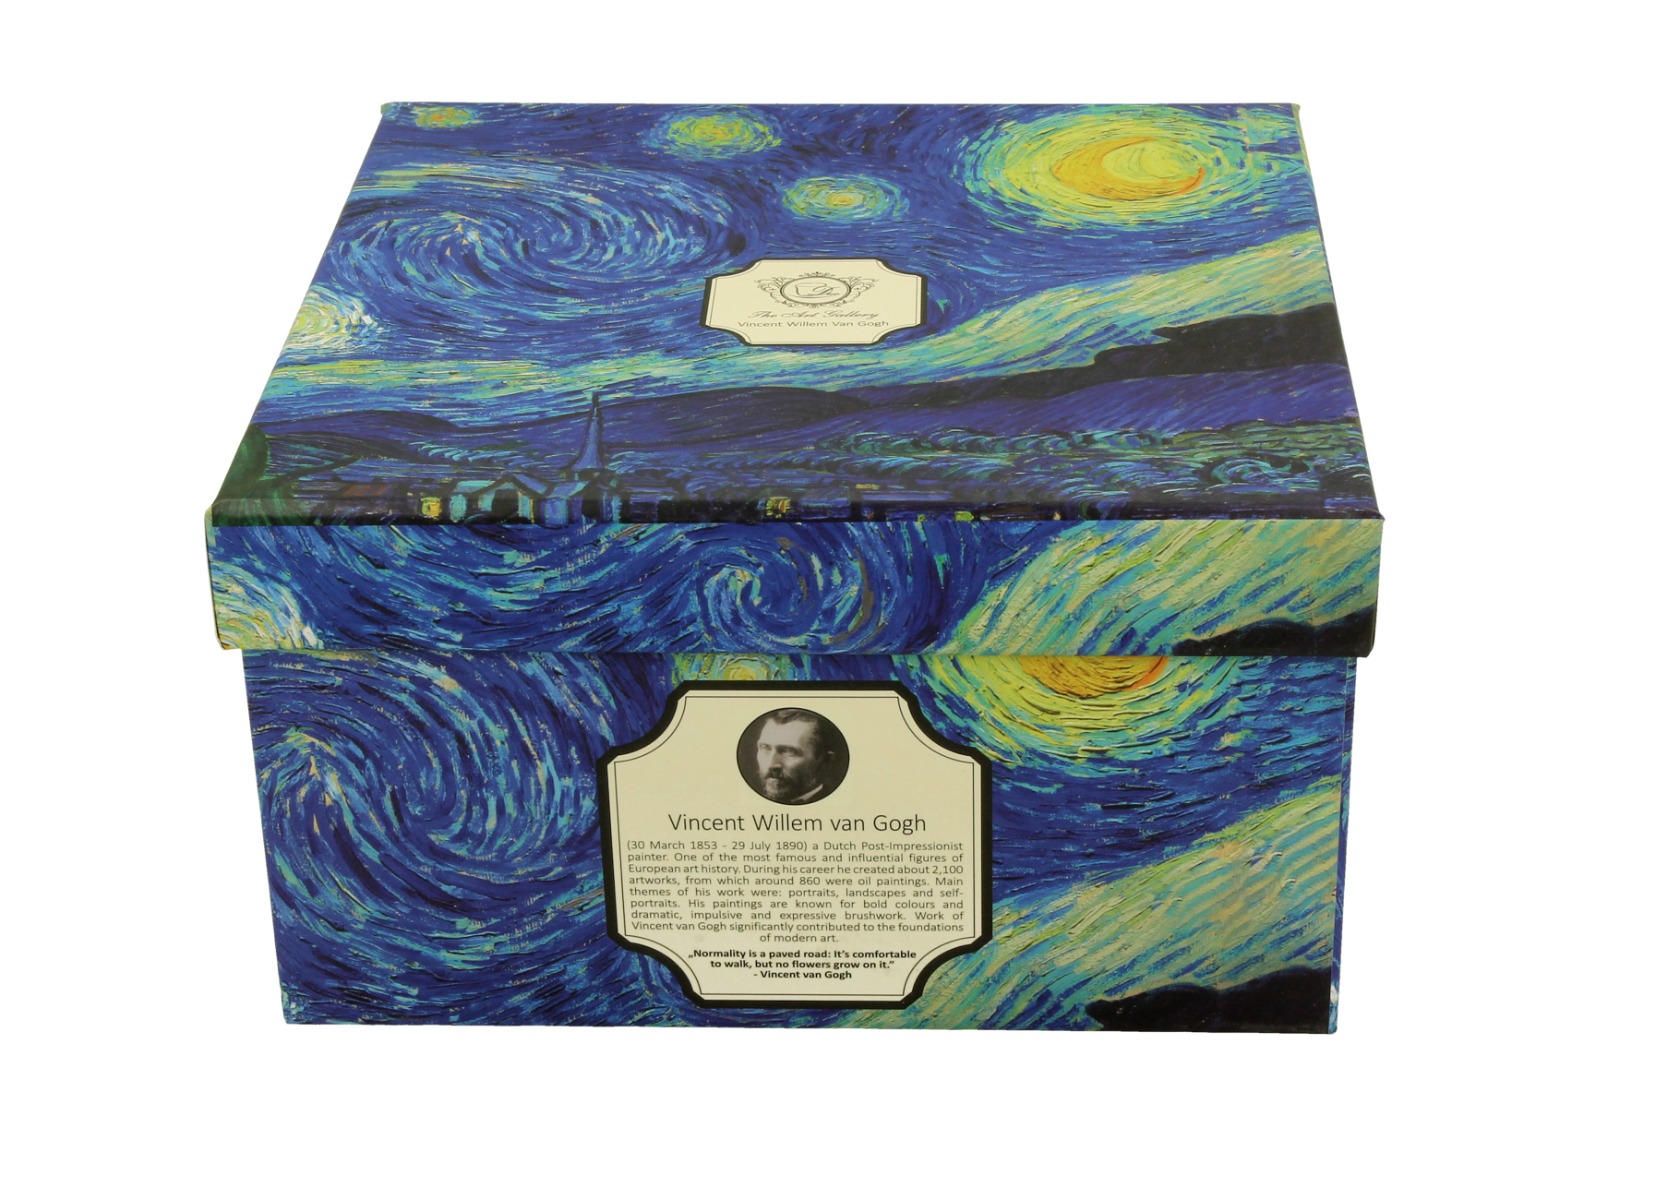 Jumbo porcelánová šálka s podšálkou Vincent Van Gogh - Starry Night 400 ml